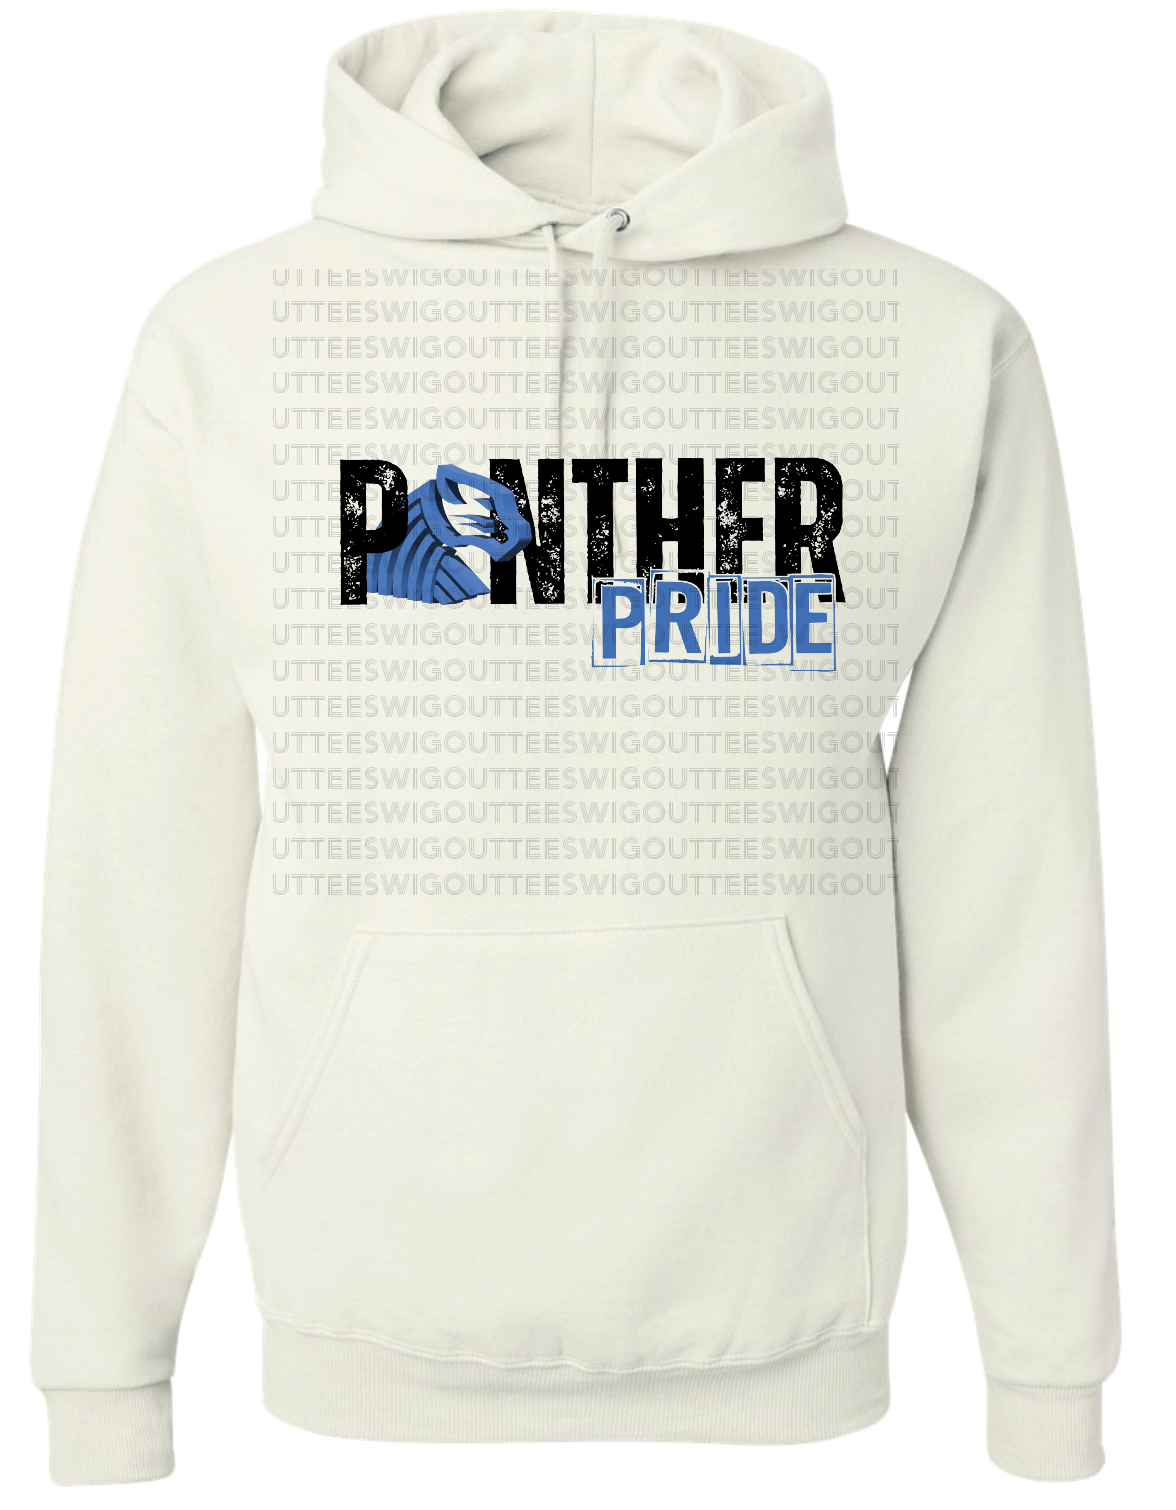 Panther Pride Nublend Hooded Sweatshirt